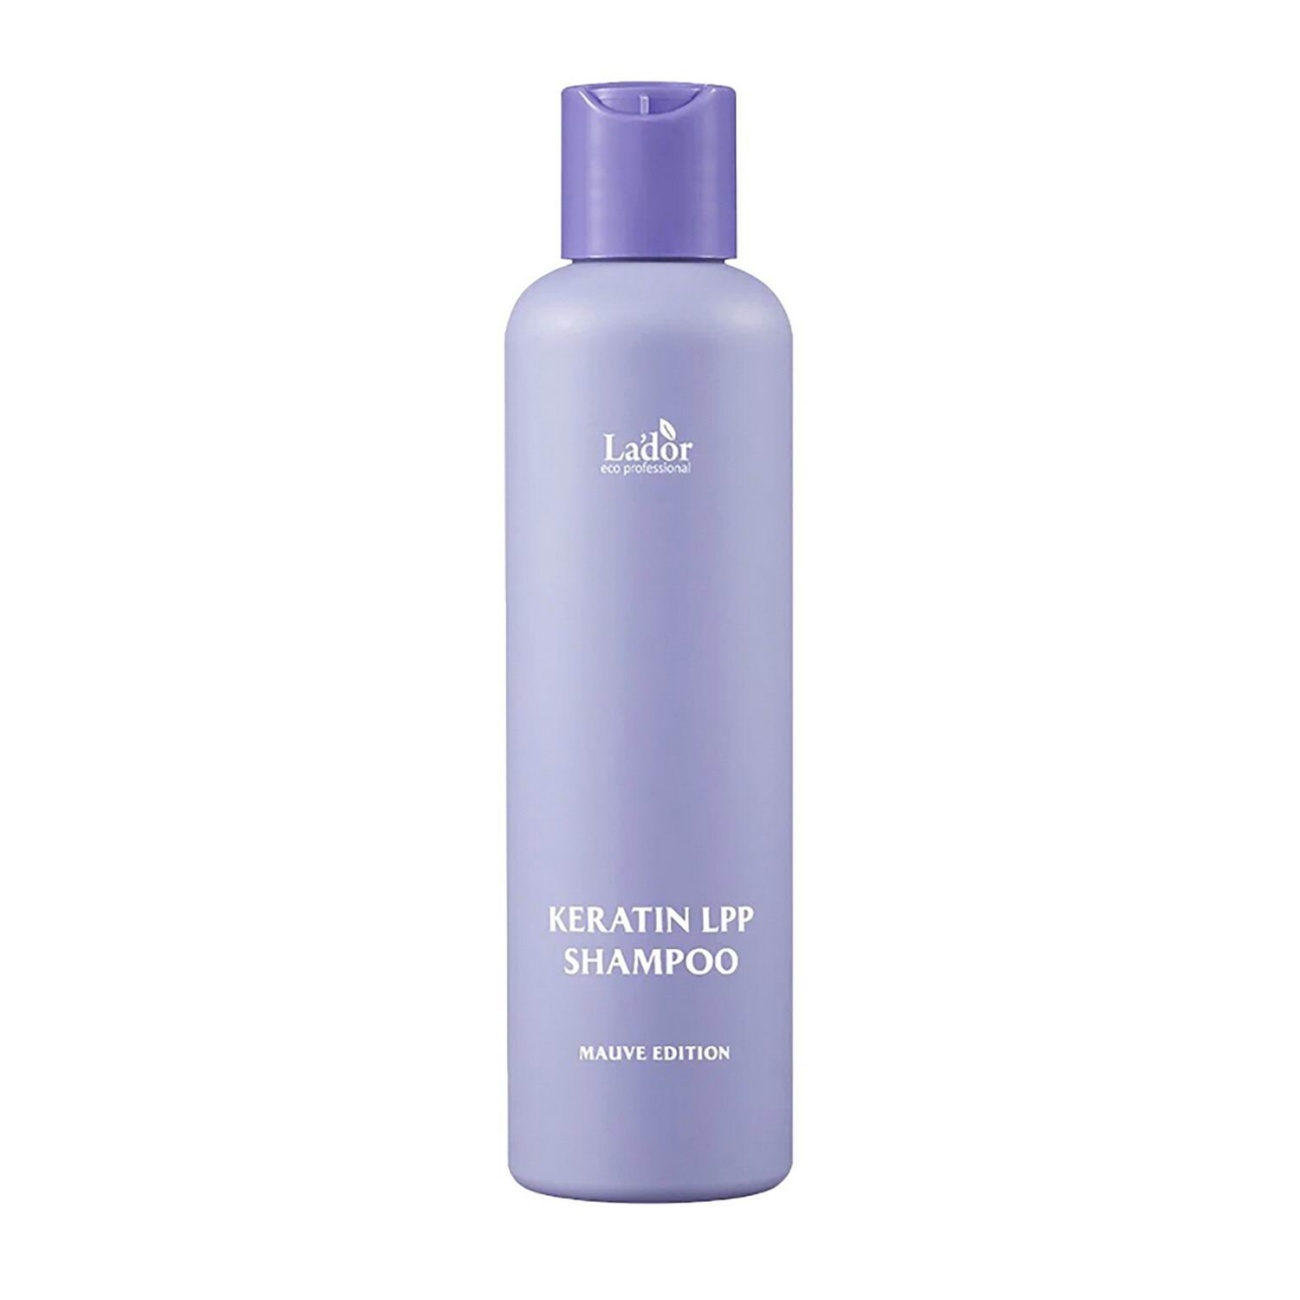 Шампунь La dor Keratin LPP Shampoo MAUVE EDITION с кератином 200мл 8809789632325